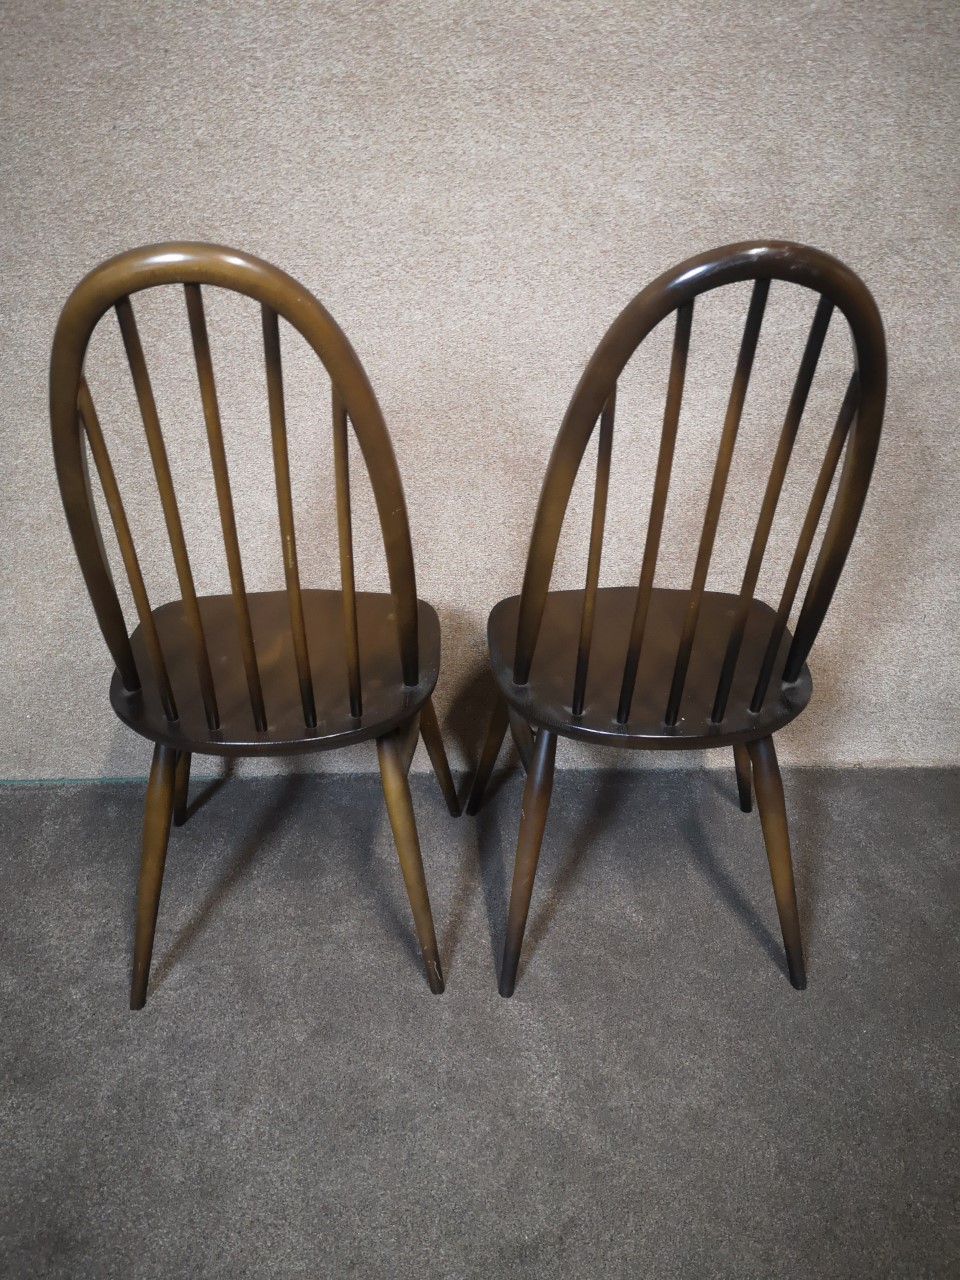 2 Ercol chairs (quaker_Dark)画像